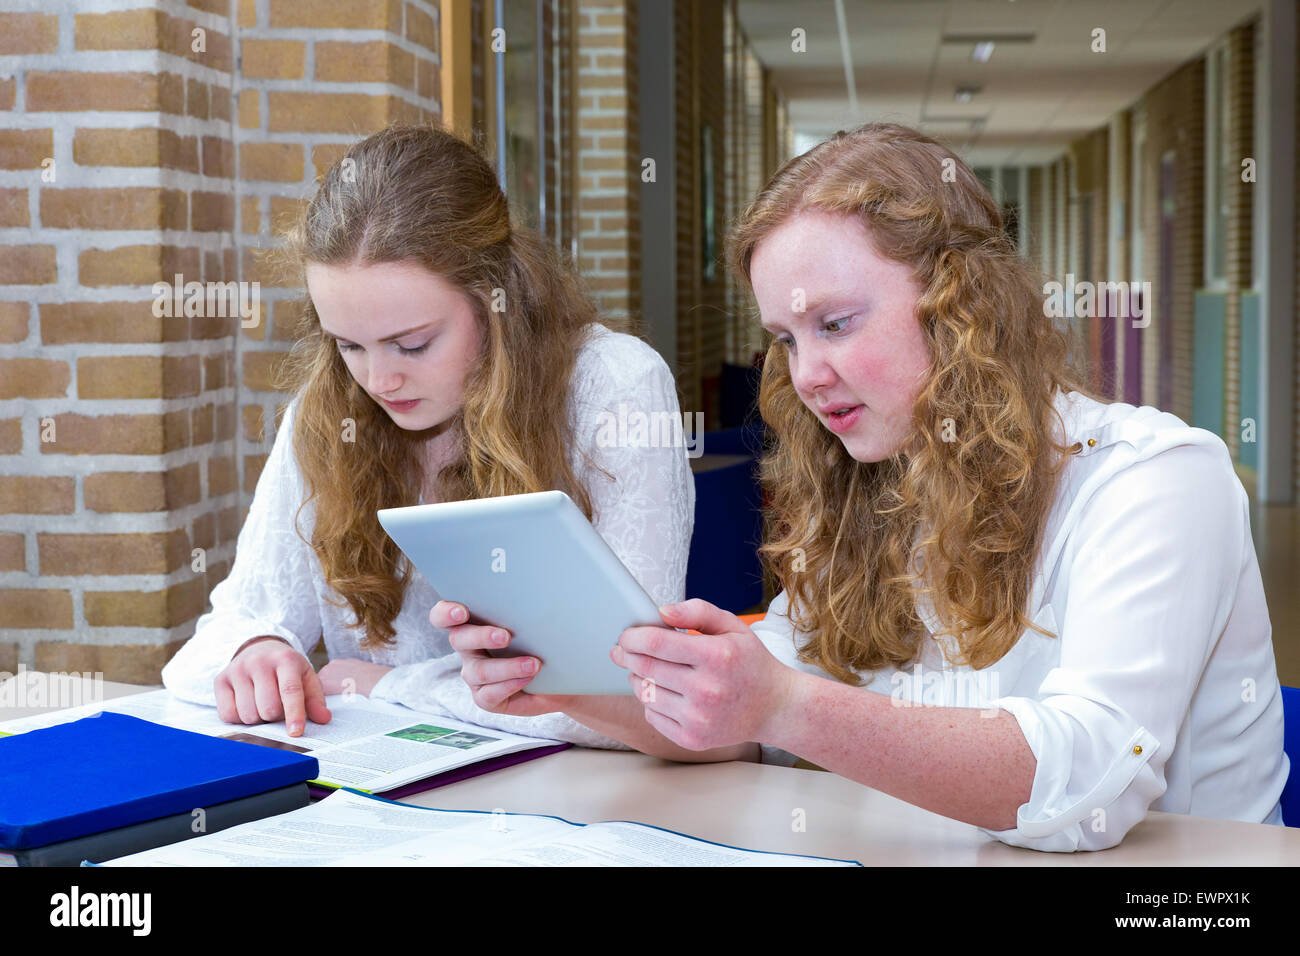 Deux amis adolescents de race blanche qui étudient au long couloir de l'école Banque D'Images